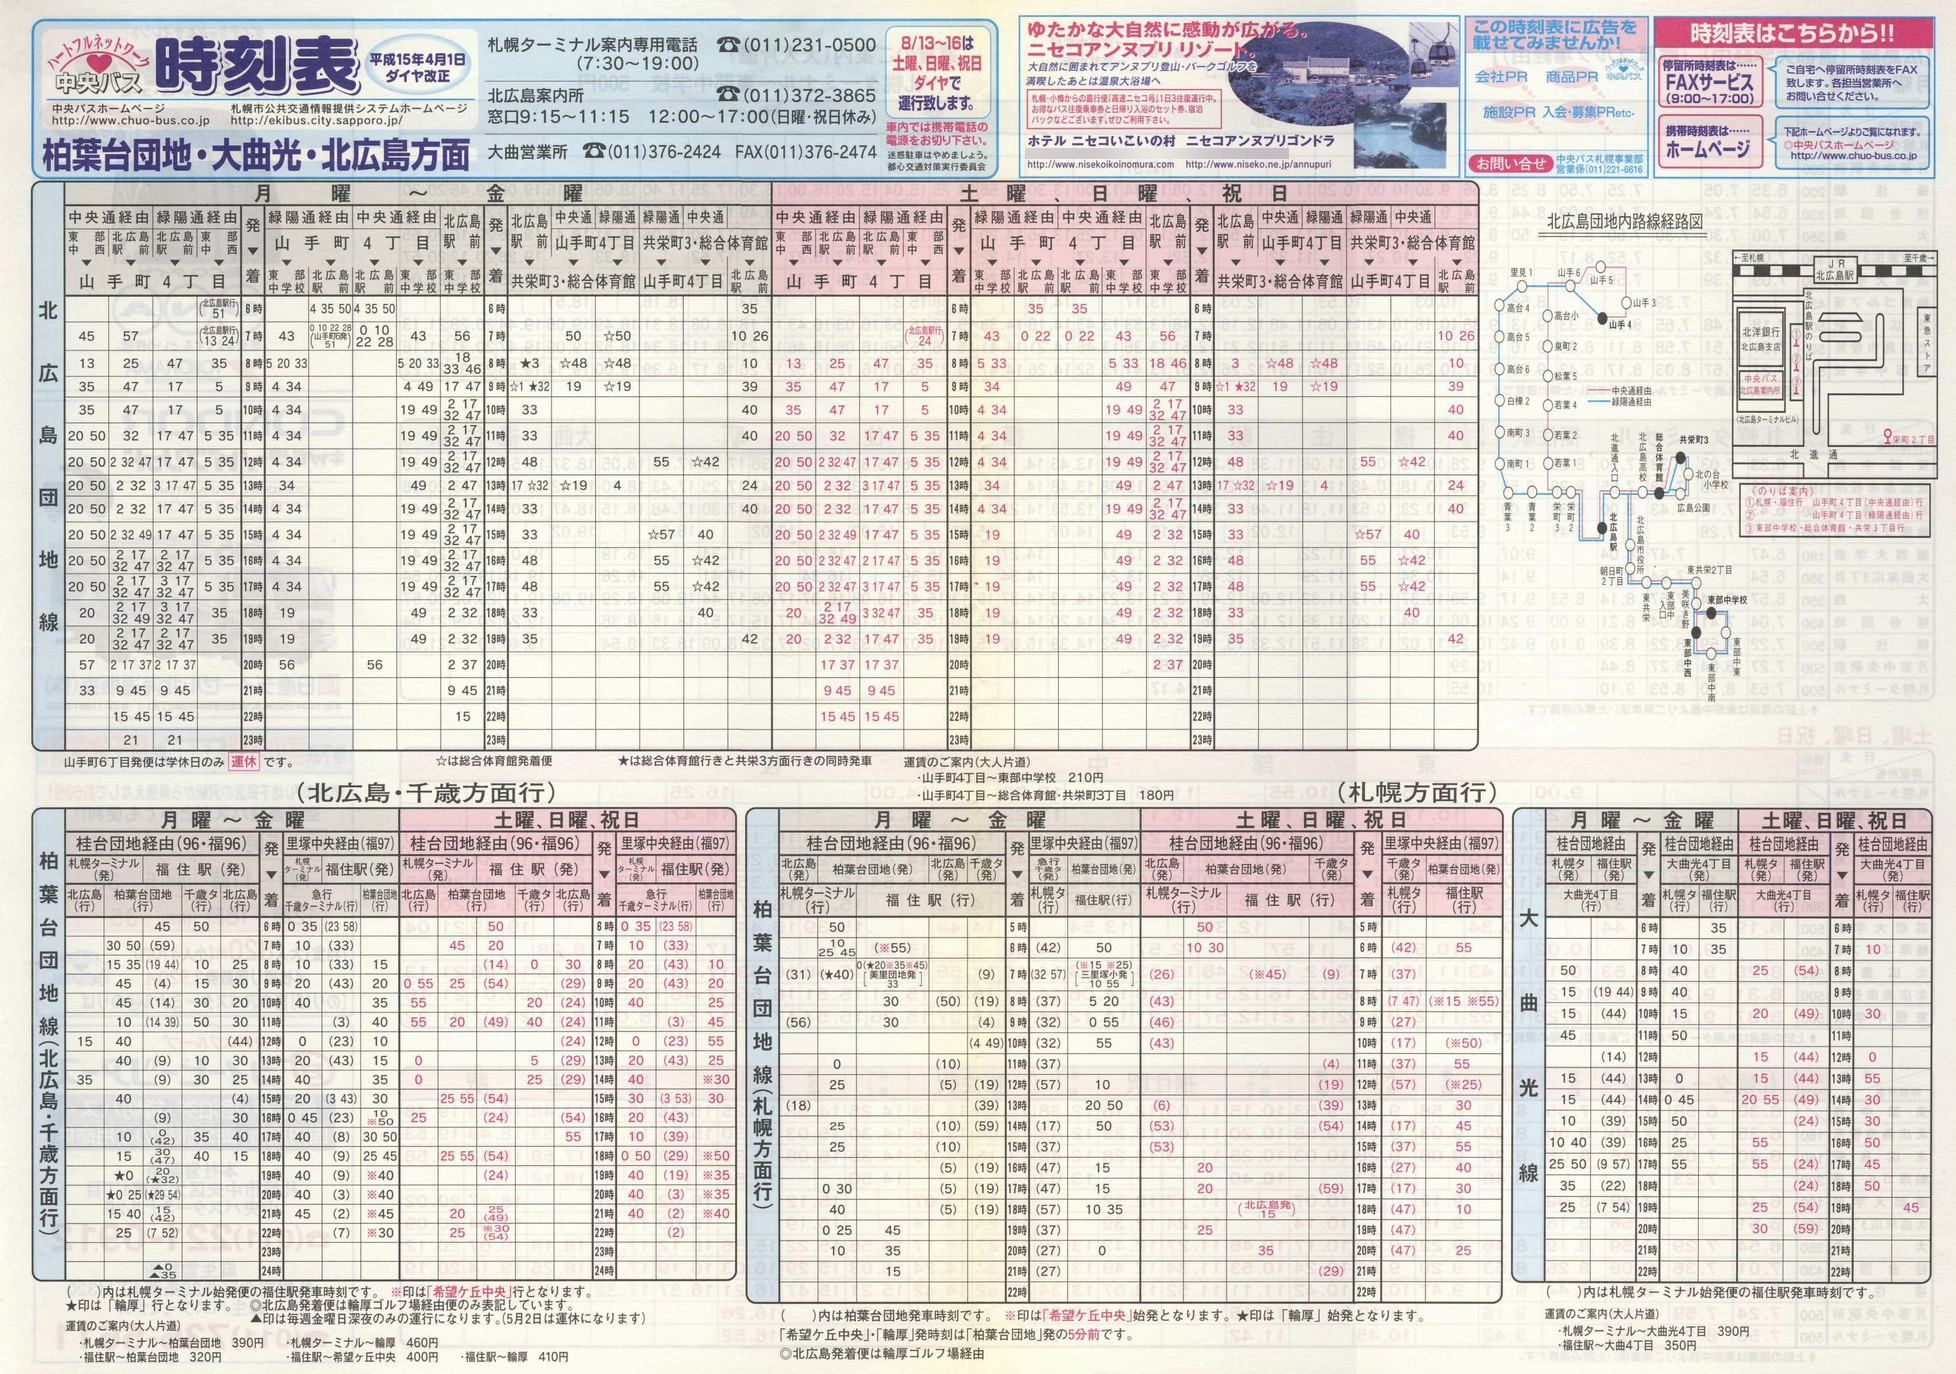 2003-04-01改正_北海道中央バス(札幌)_柏葉台団地・大曲光・北広島方面時刻表表面